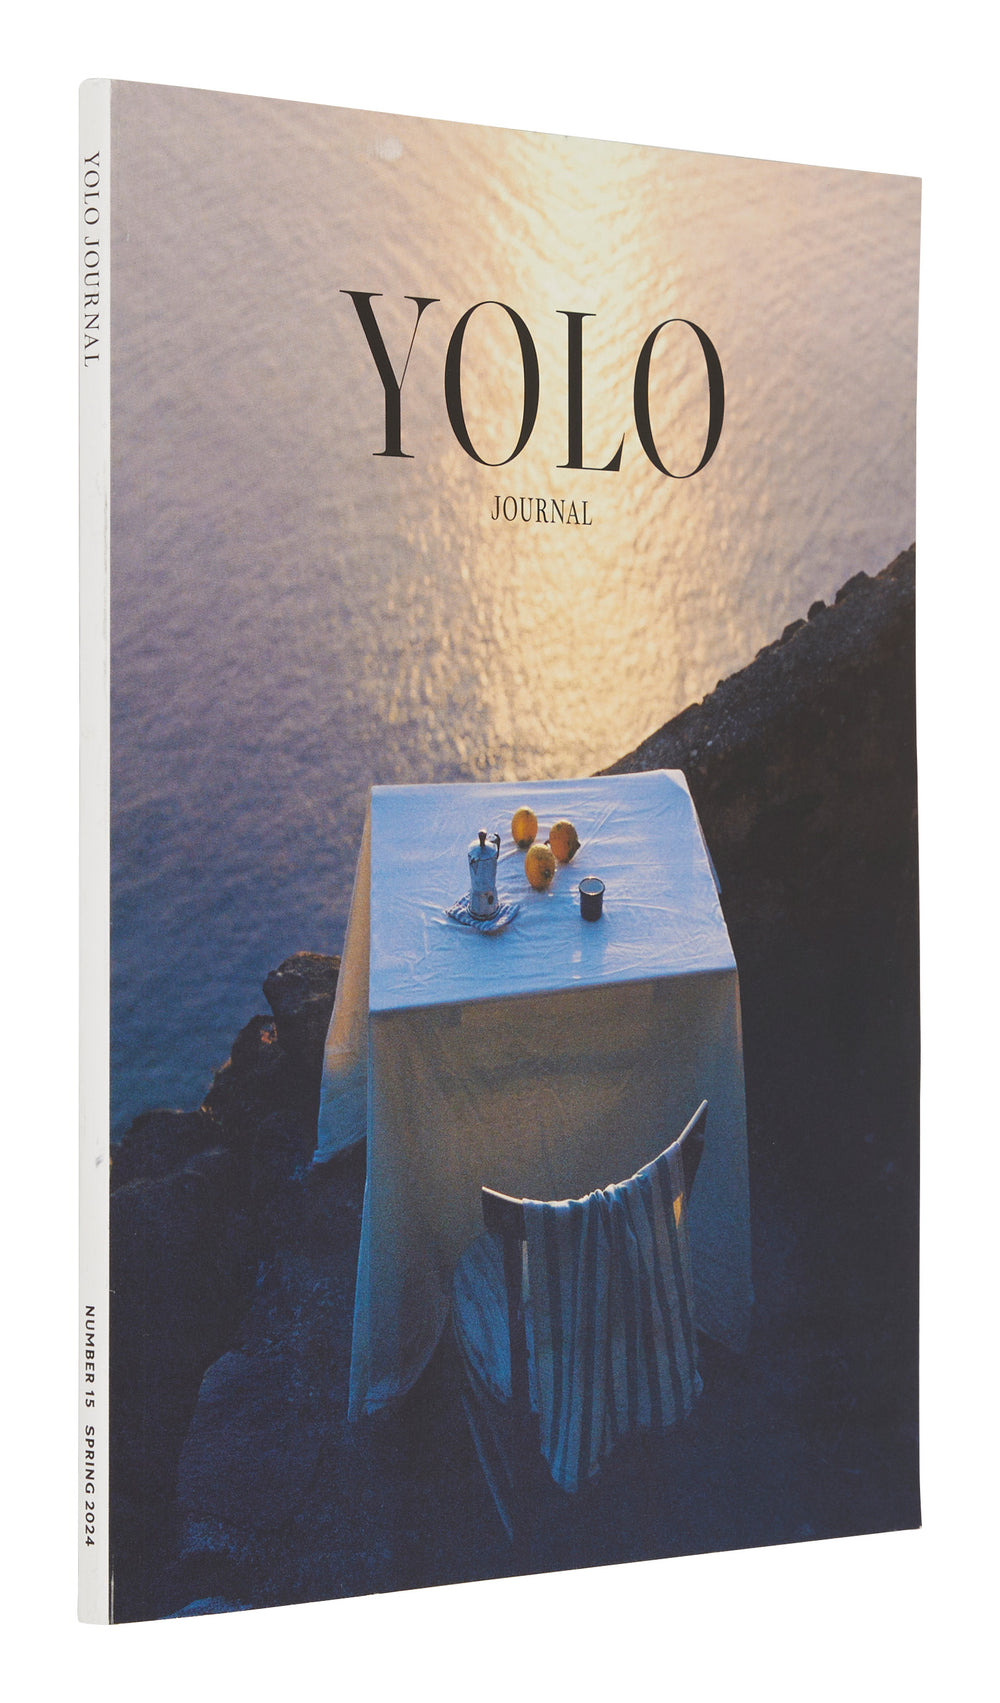 Yolo Journal #15